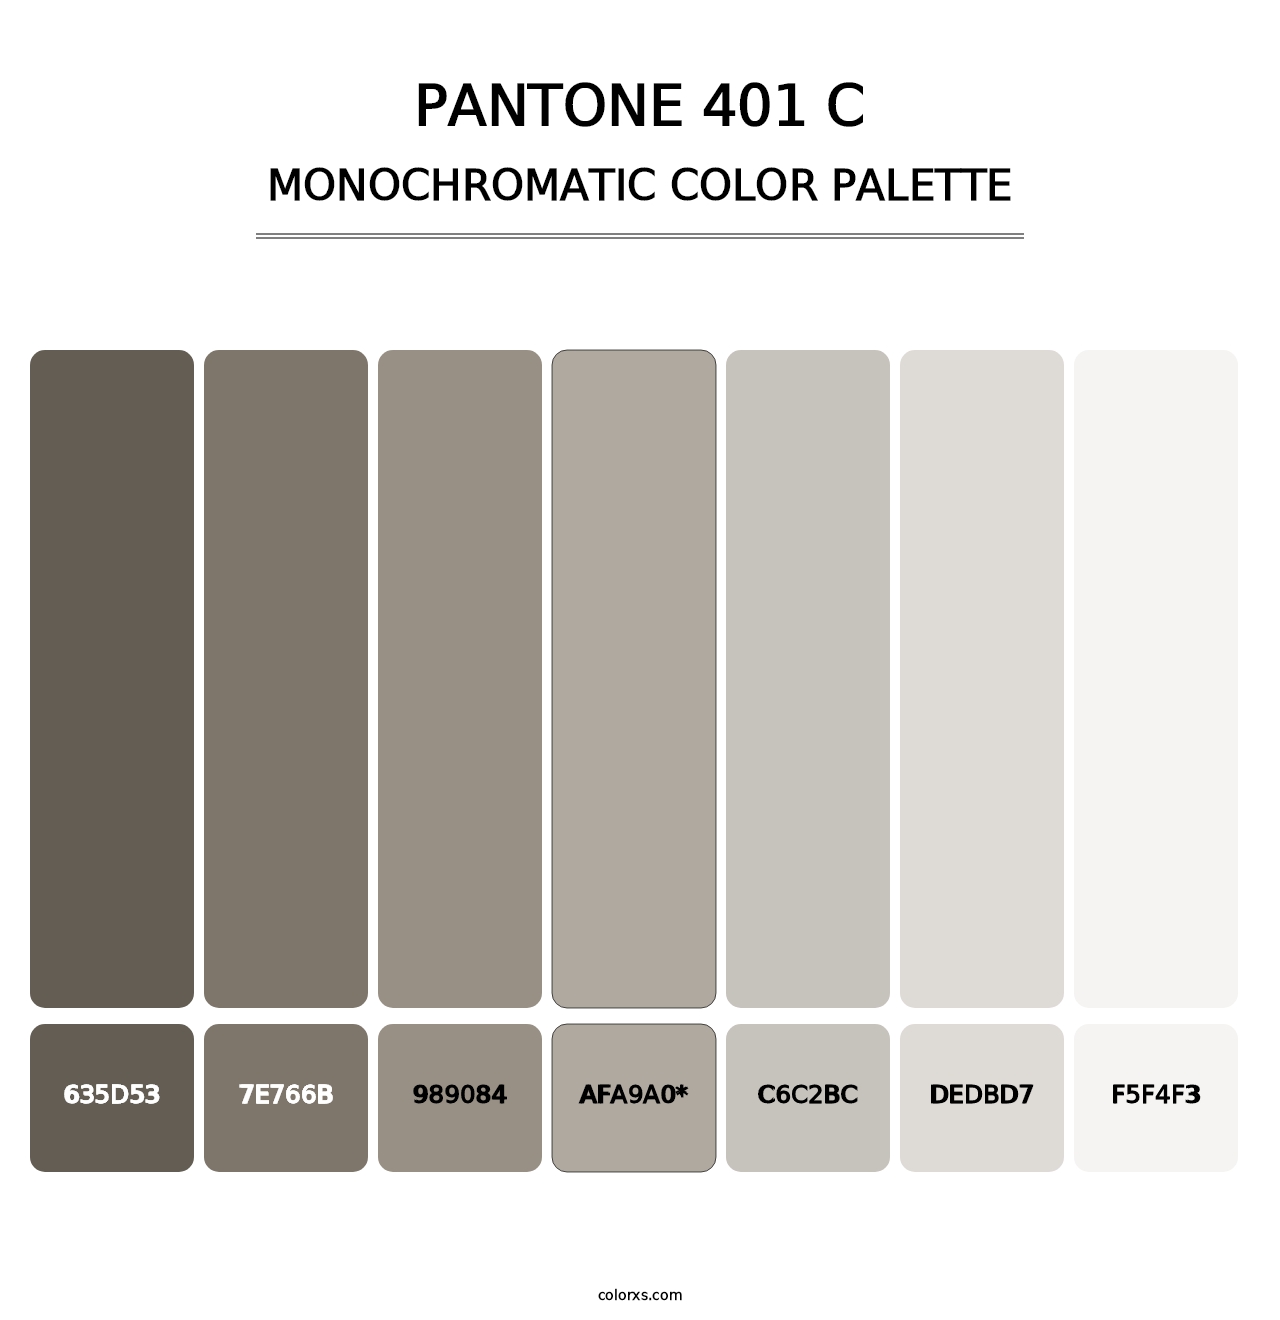 PANTONE 401 C - Monochromatic Color Palette